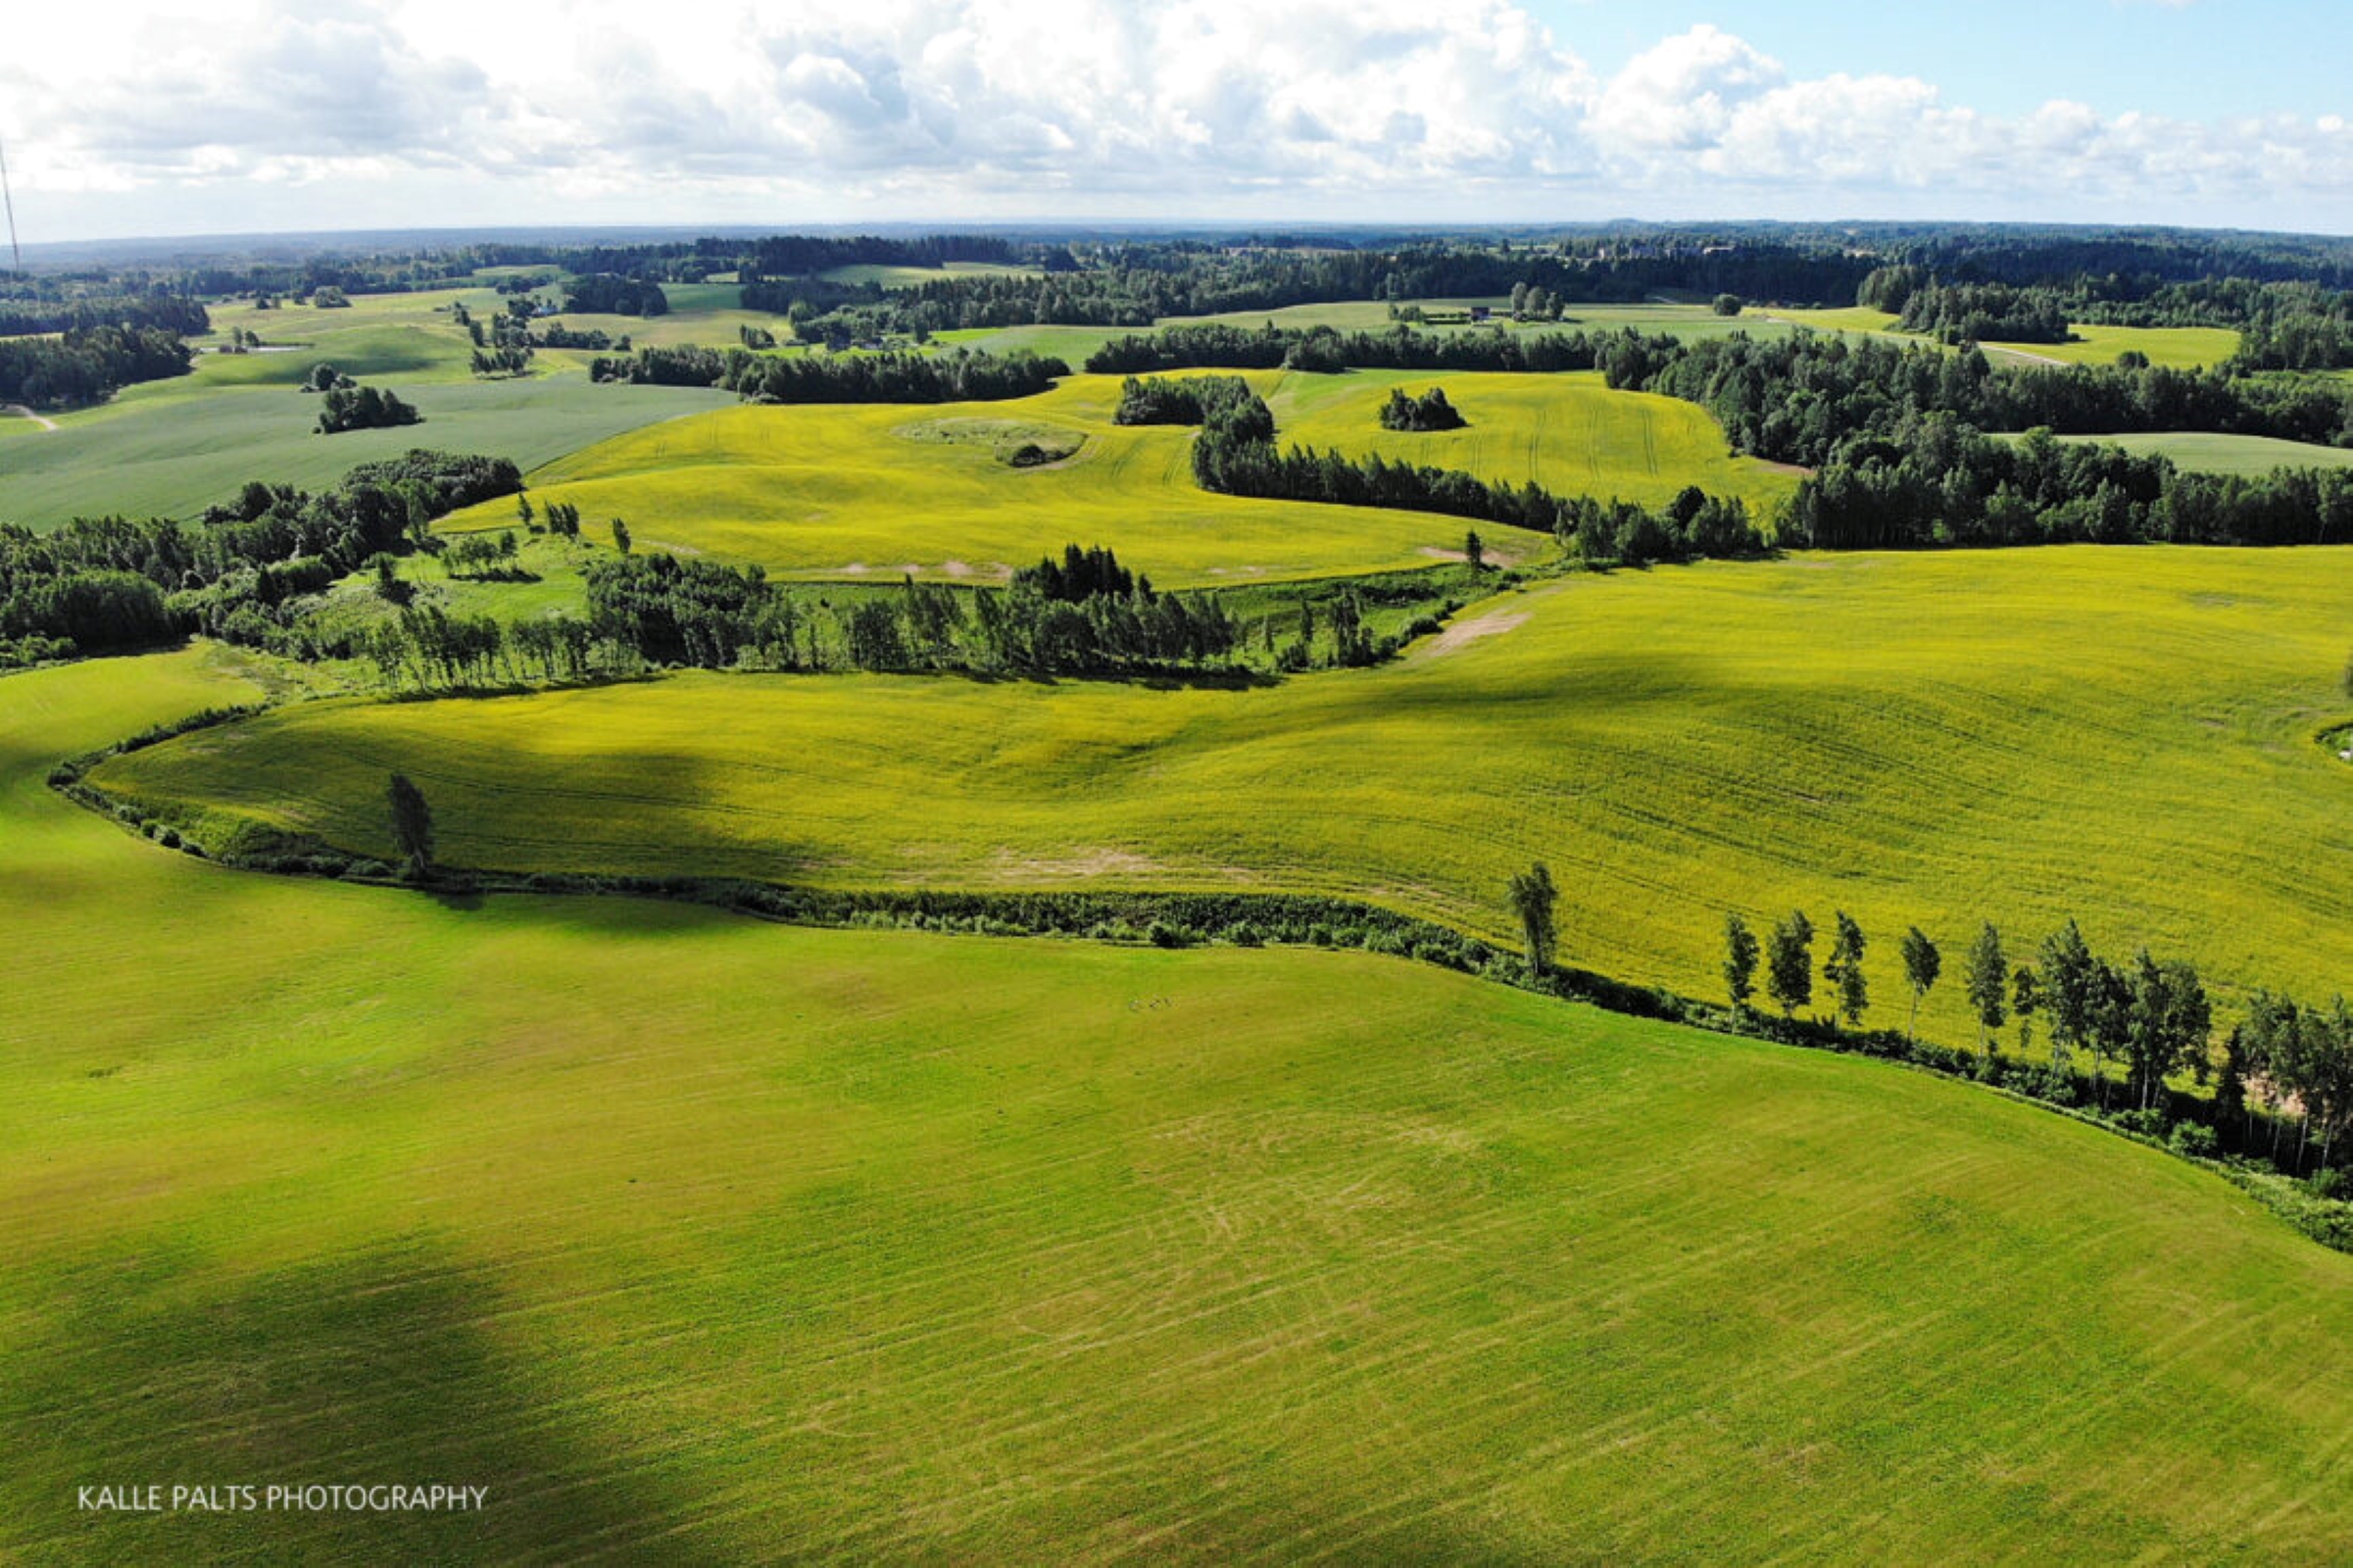 Lõun-Eesti kuppelmaastik